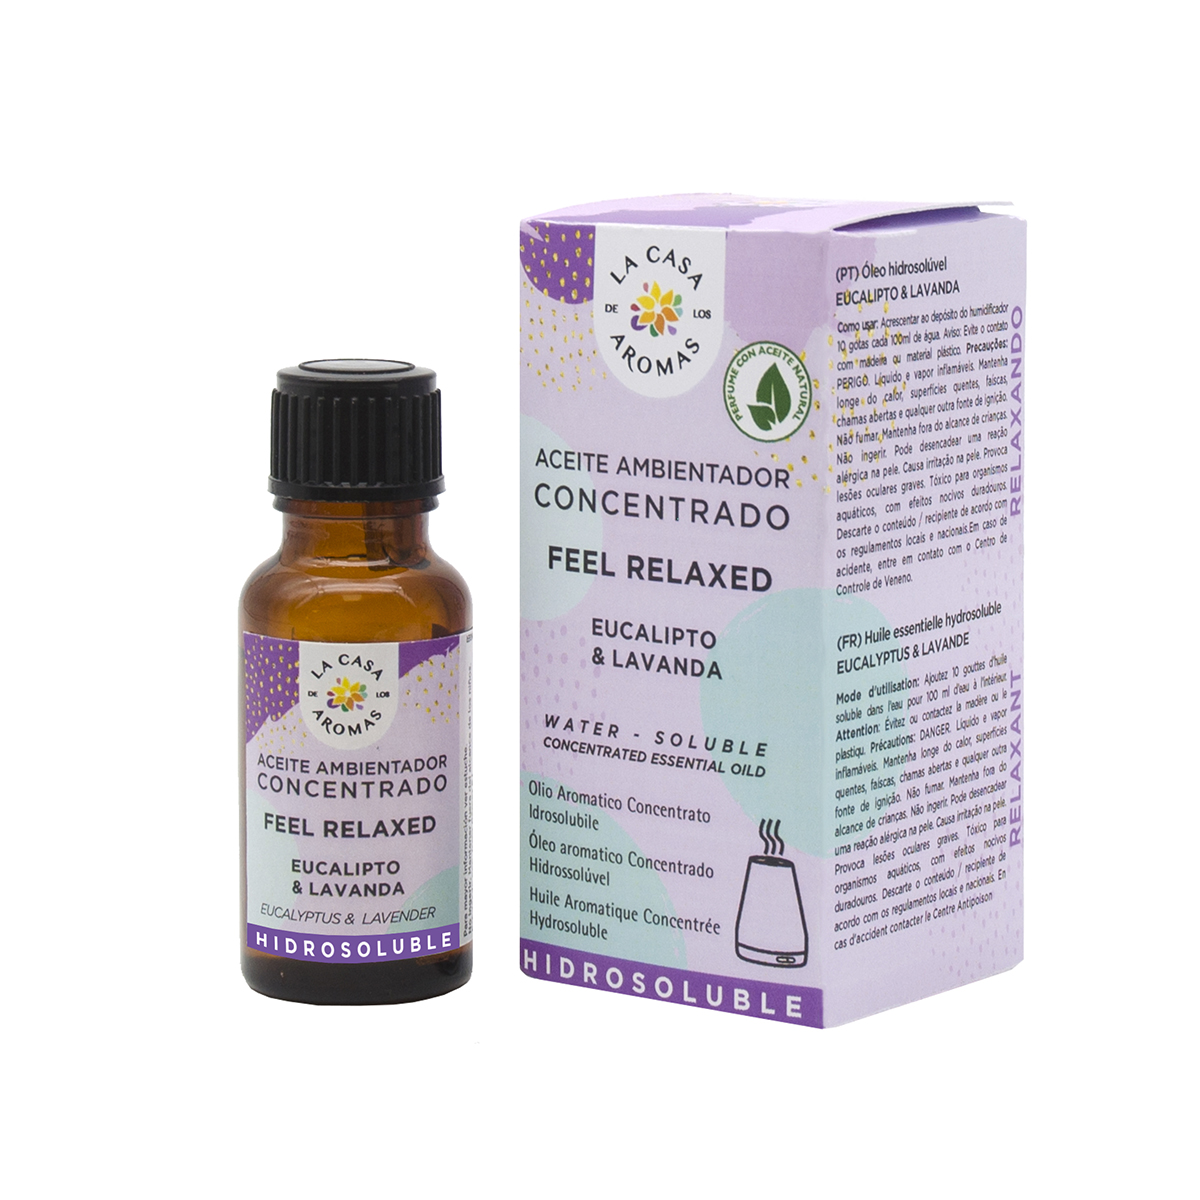 Aceite Ambientador Concentrado Hidrosoluble Feel Relaxed - Eucalipto & Lavanda - 15 ml